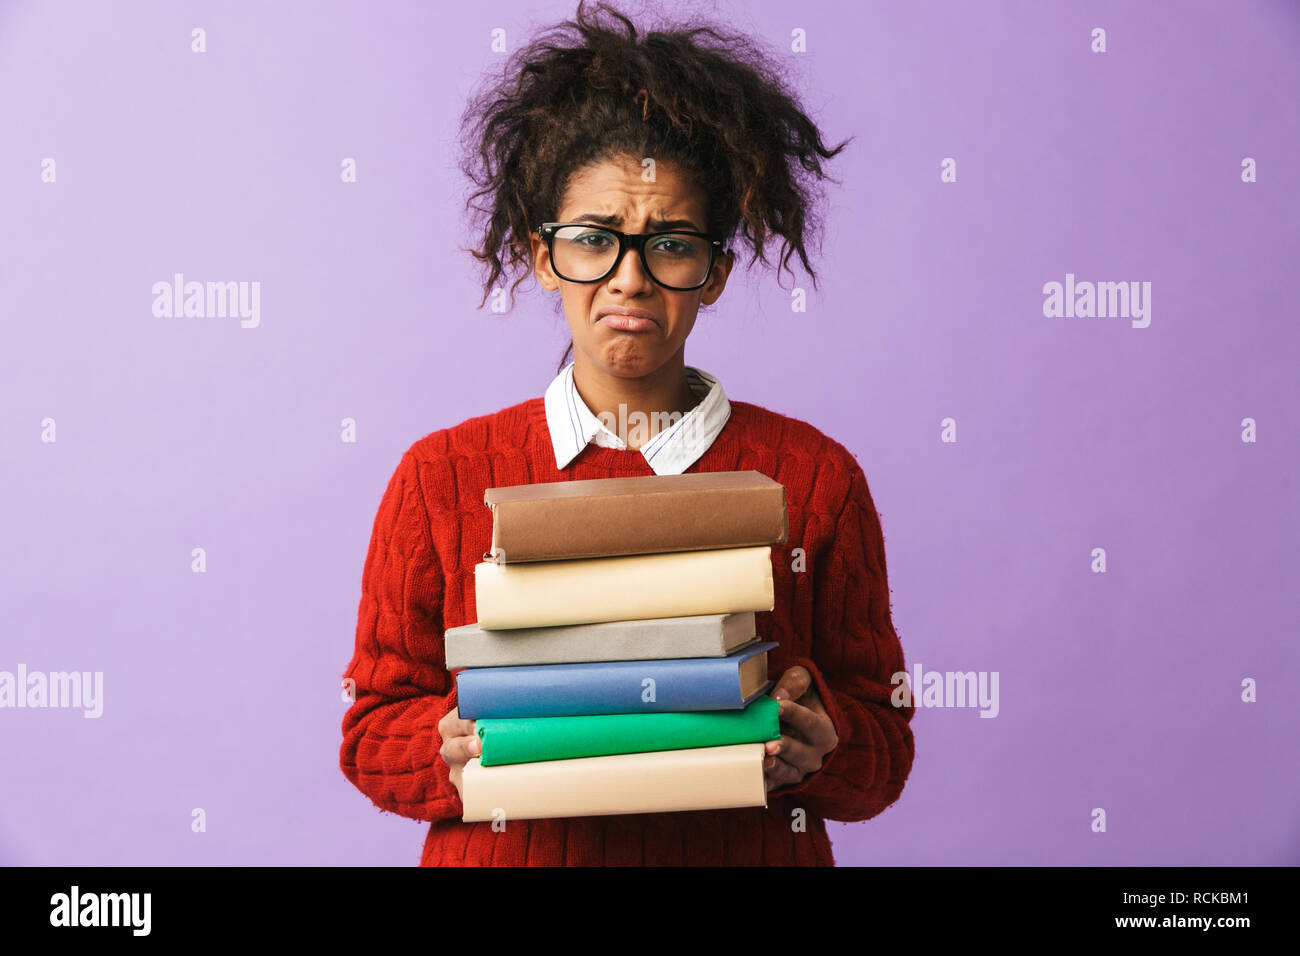 Americano africano ragazza ricalcato in uniforme scolastica tenendo il mazzo di libri isolate su sfondo viola Foto Stock